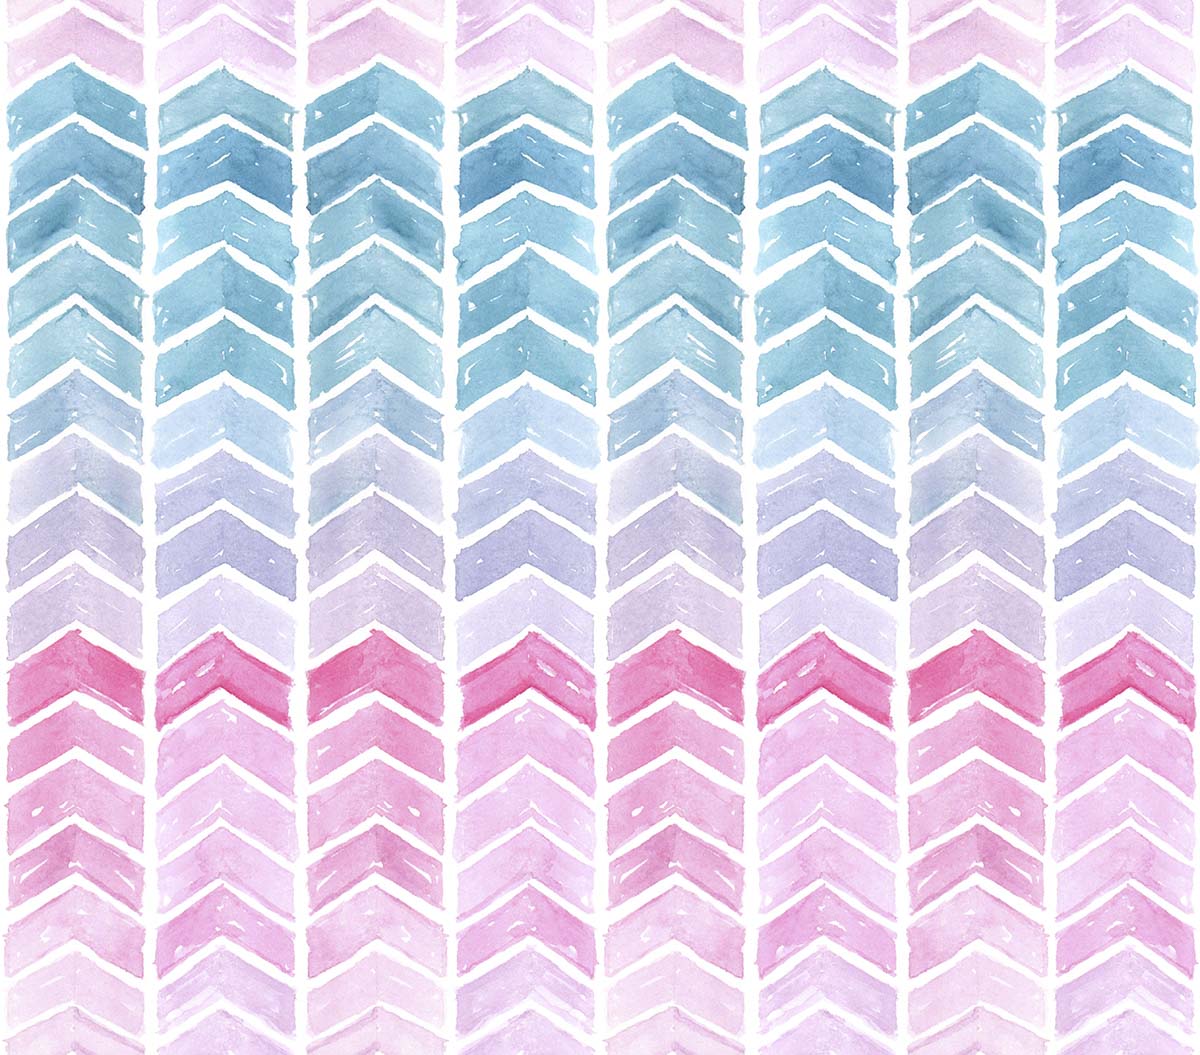 A watercolor chevron pattern